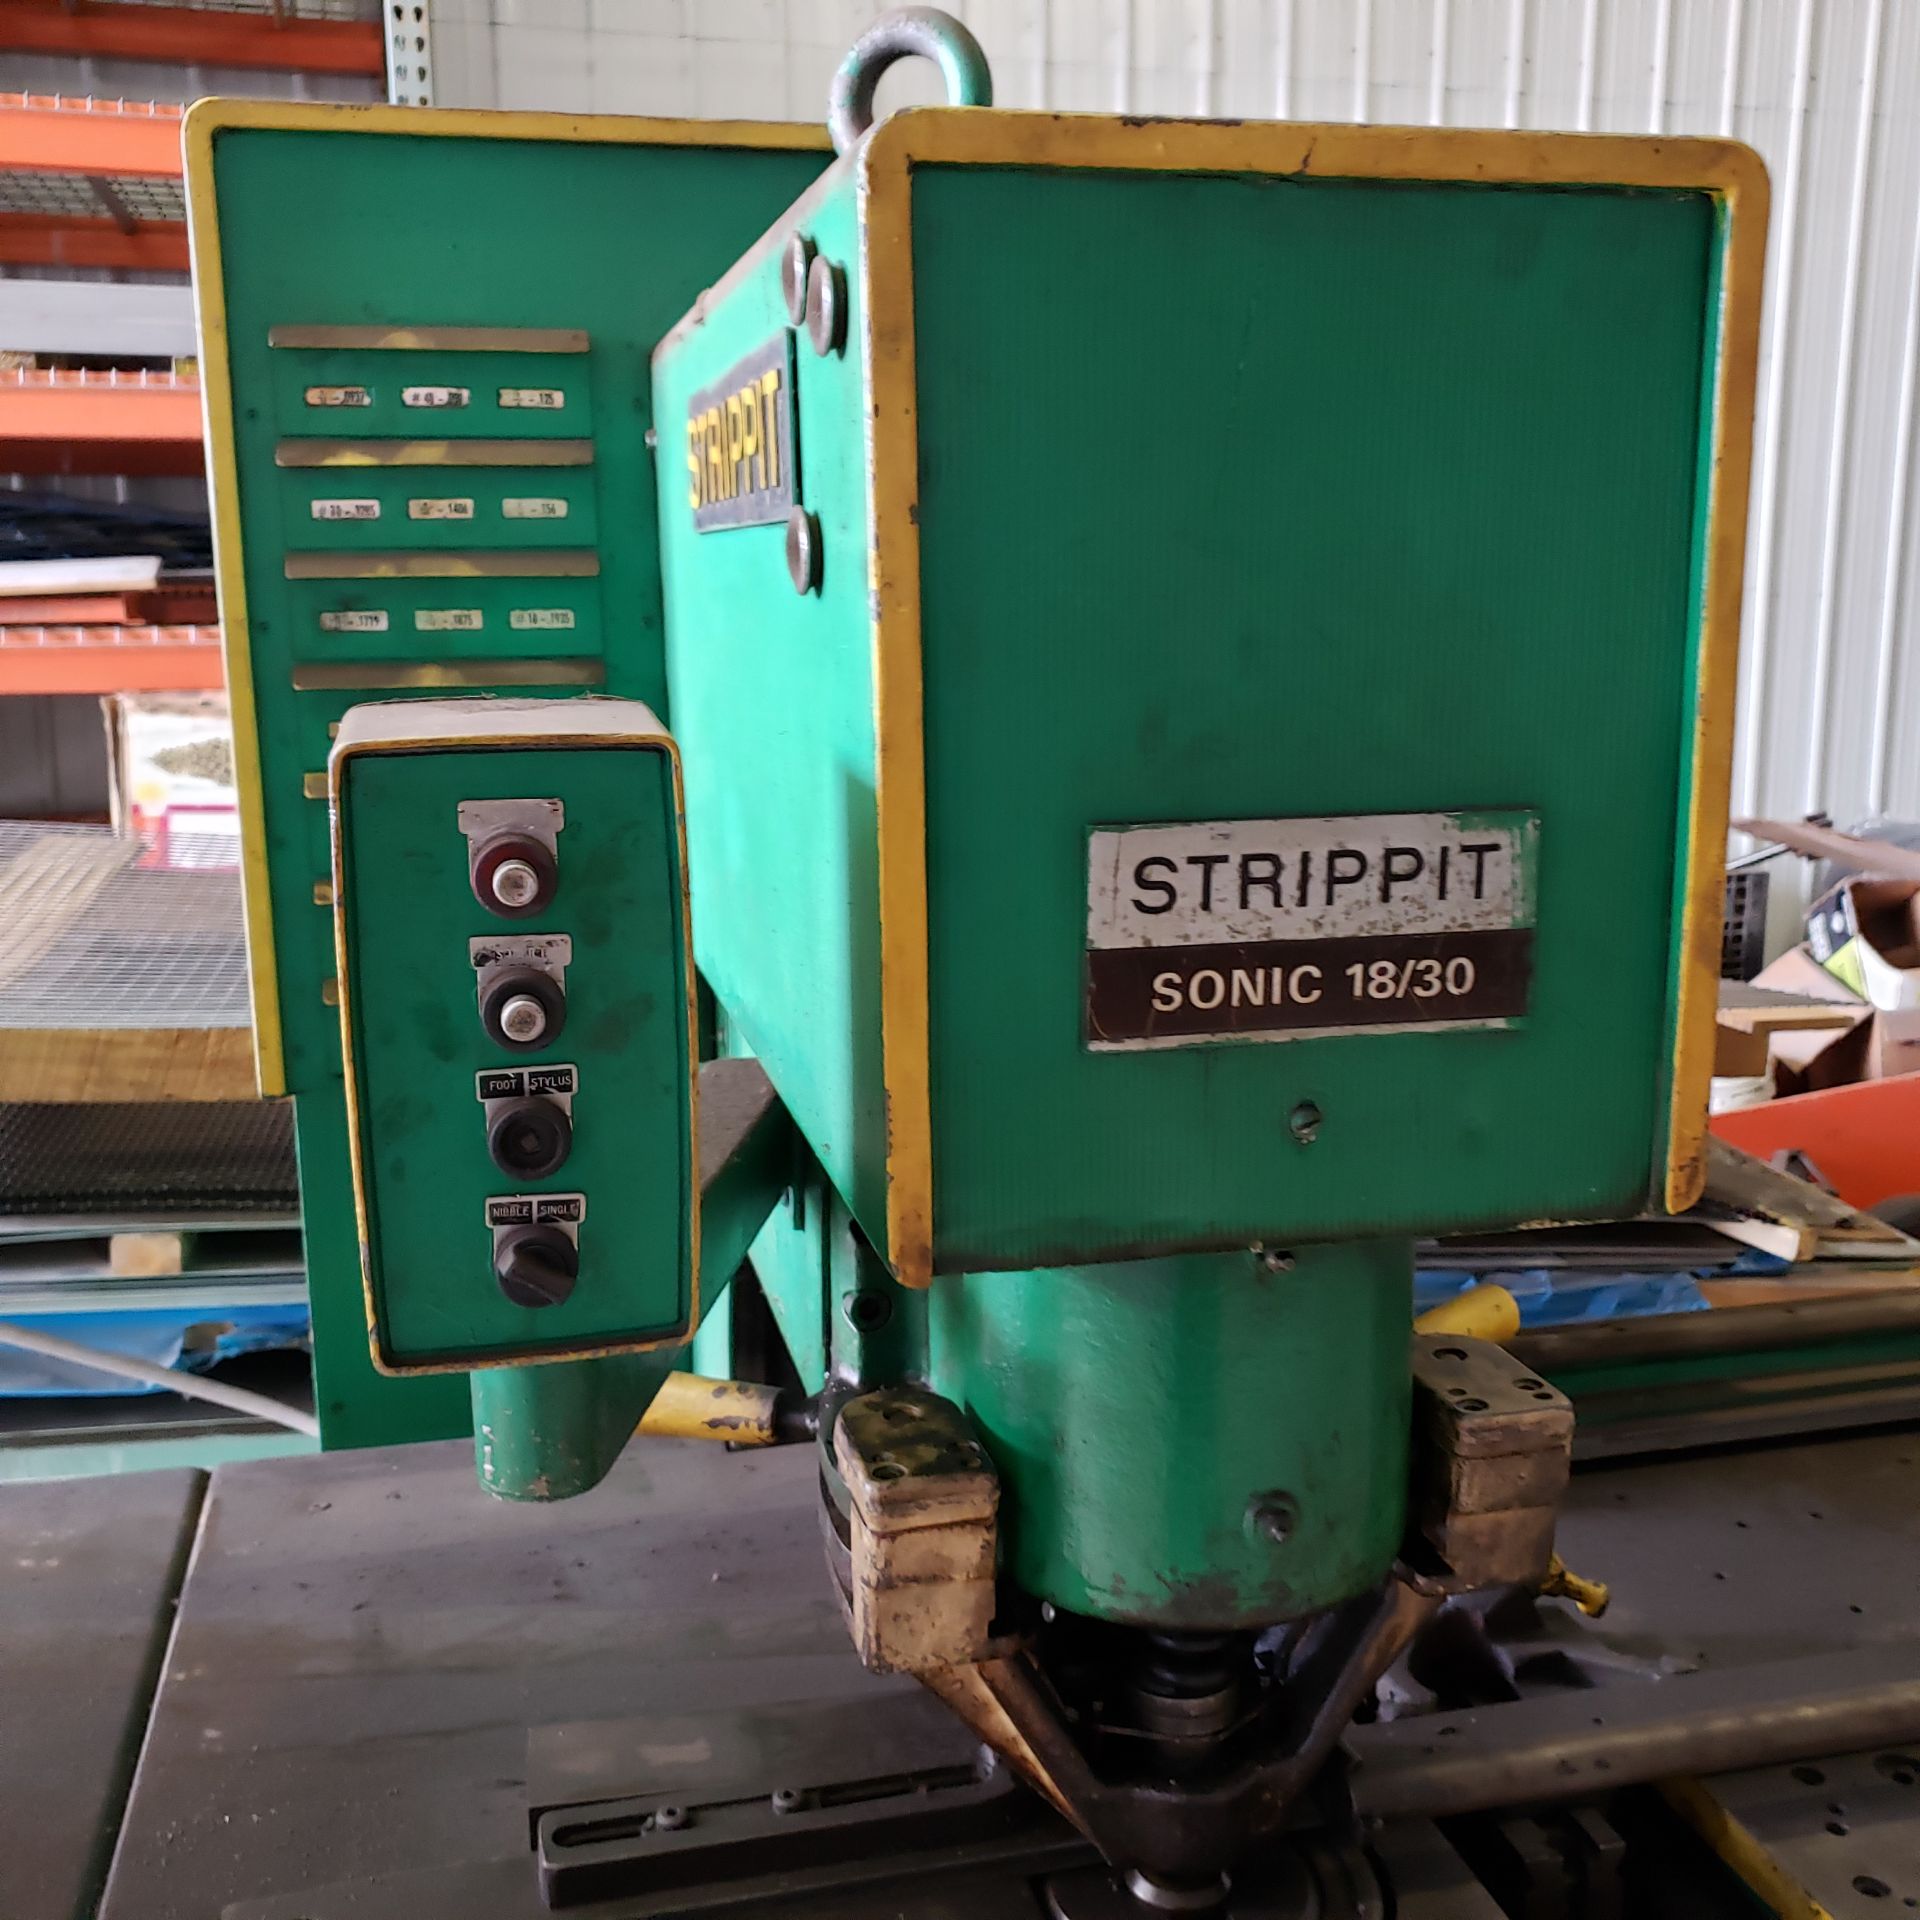 STRIPPIT Sonic Sheetmetal Fabricator Model 18/30, s/n 06181866 - Image 3 of 4